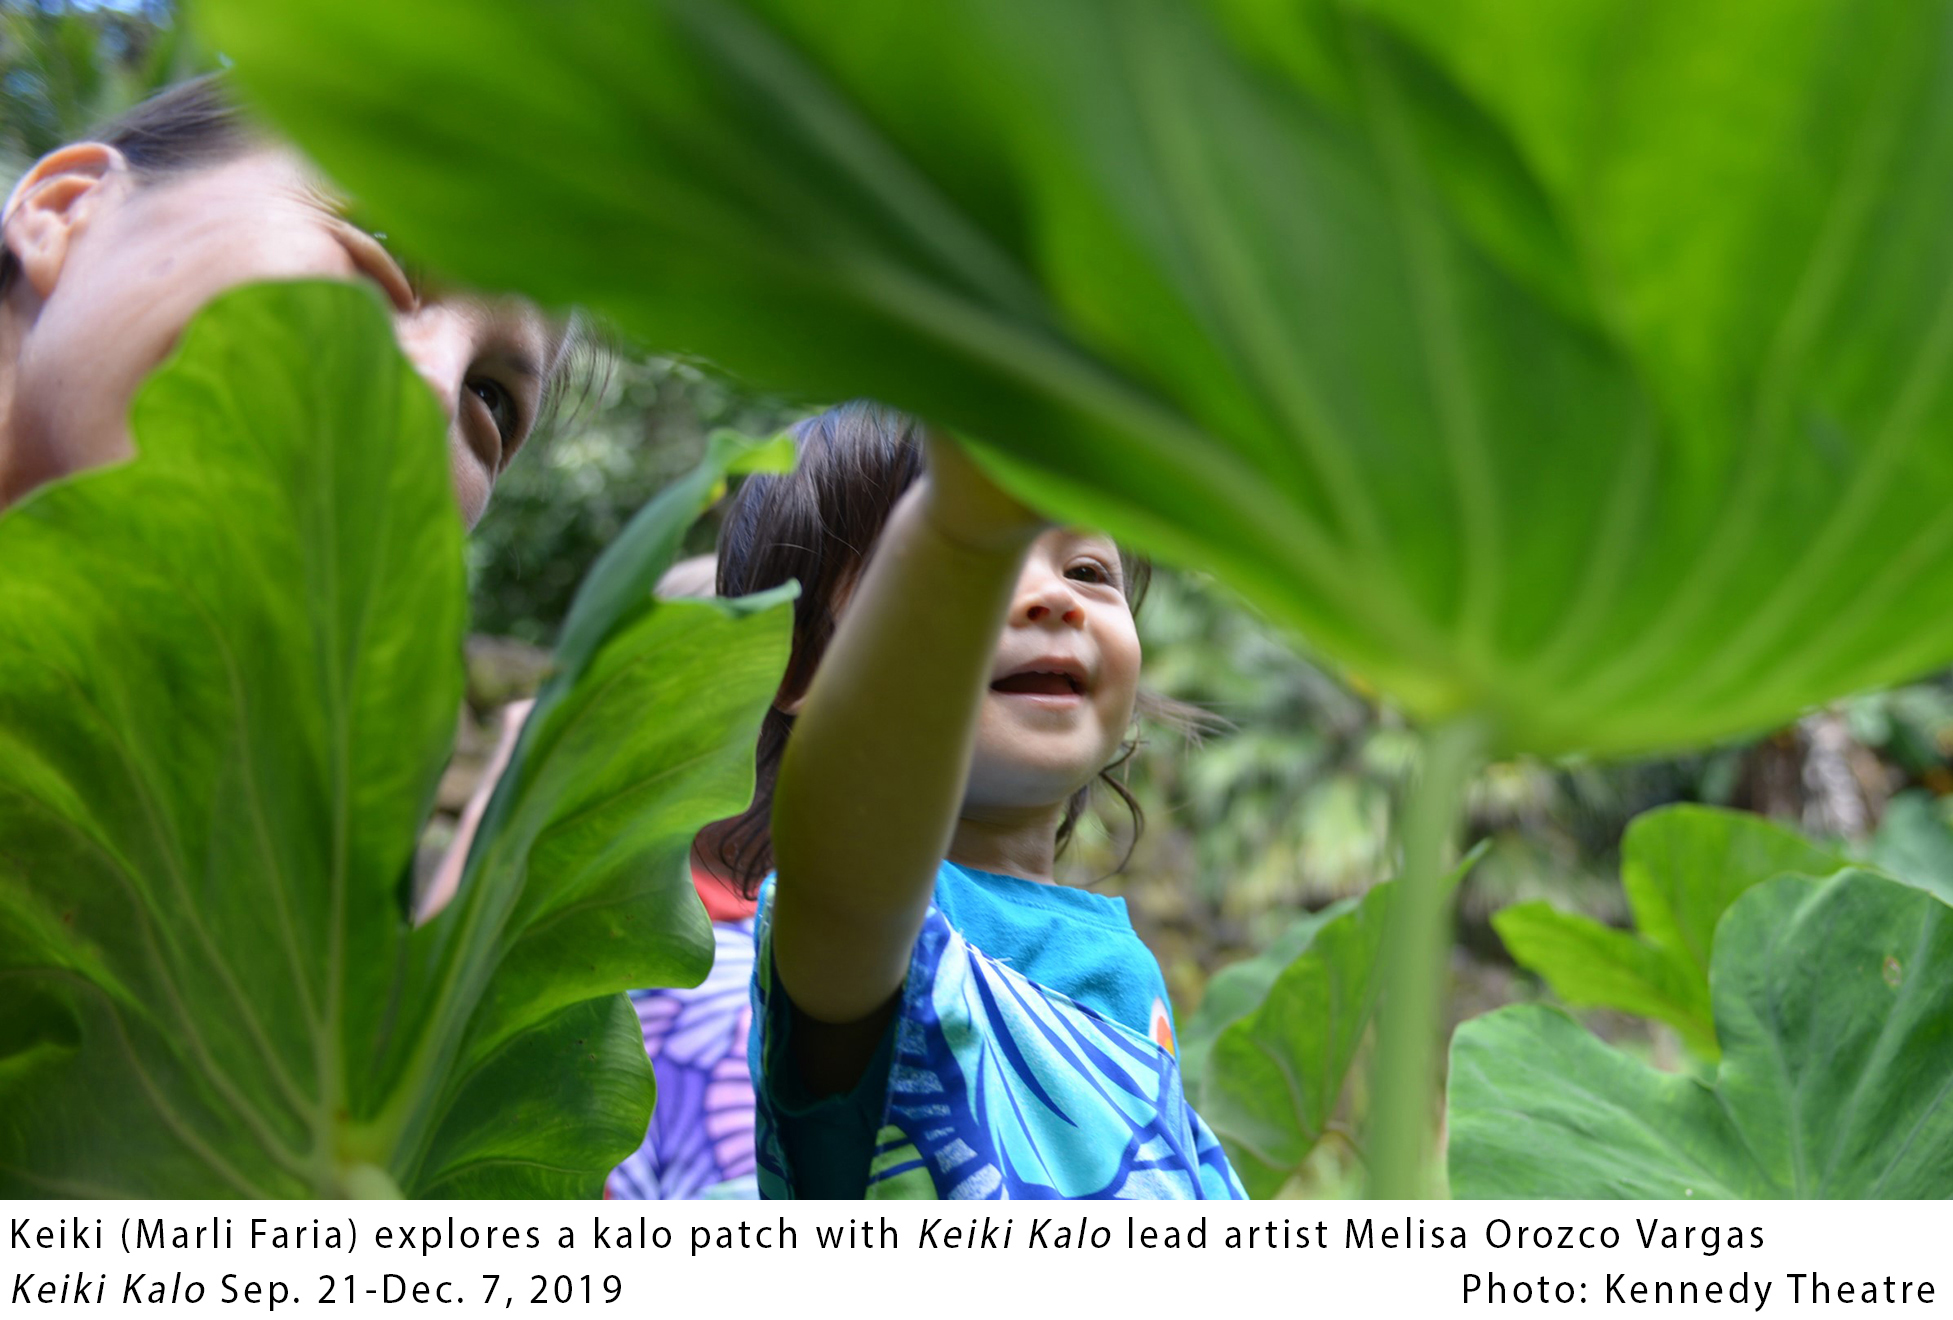 Keiki (Marli Faria) explores a kalo patch with Keiki Kalo lead artist Melisa Orozco Vargas. Keiki Kalo Sep 21-Dec 7, 2019